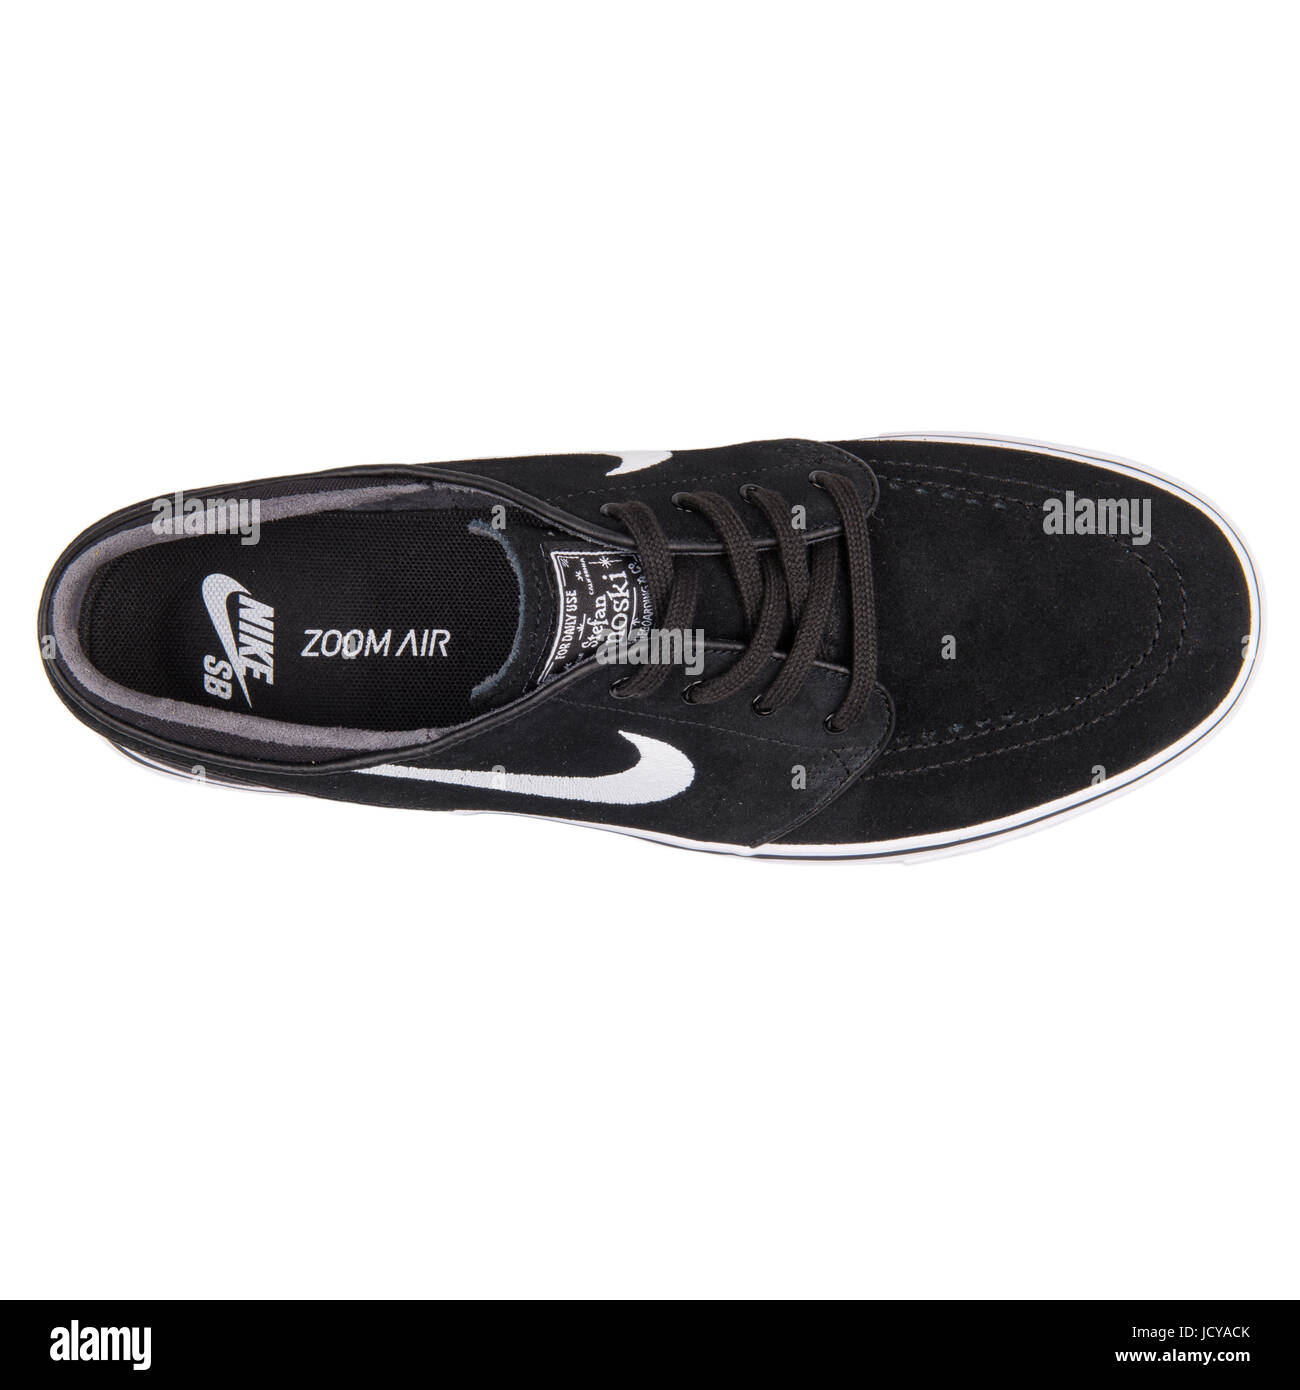 Stefan Janoski Nike Zoom pour hommes en noir et blanc chaussures de skate -  333824-026 Photo Stock - Alamy